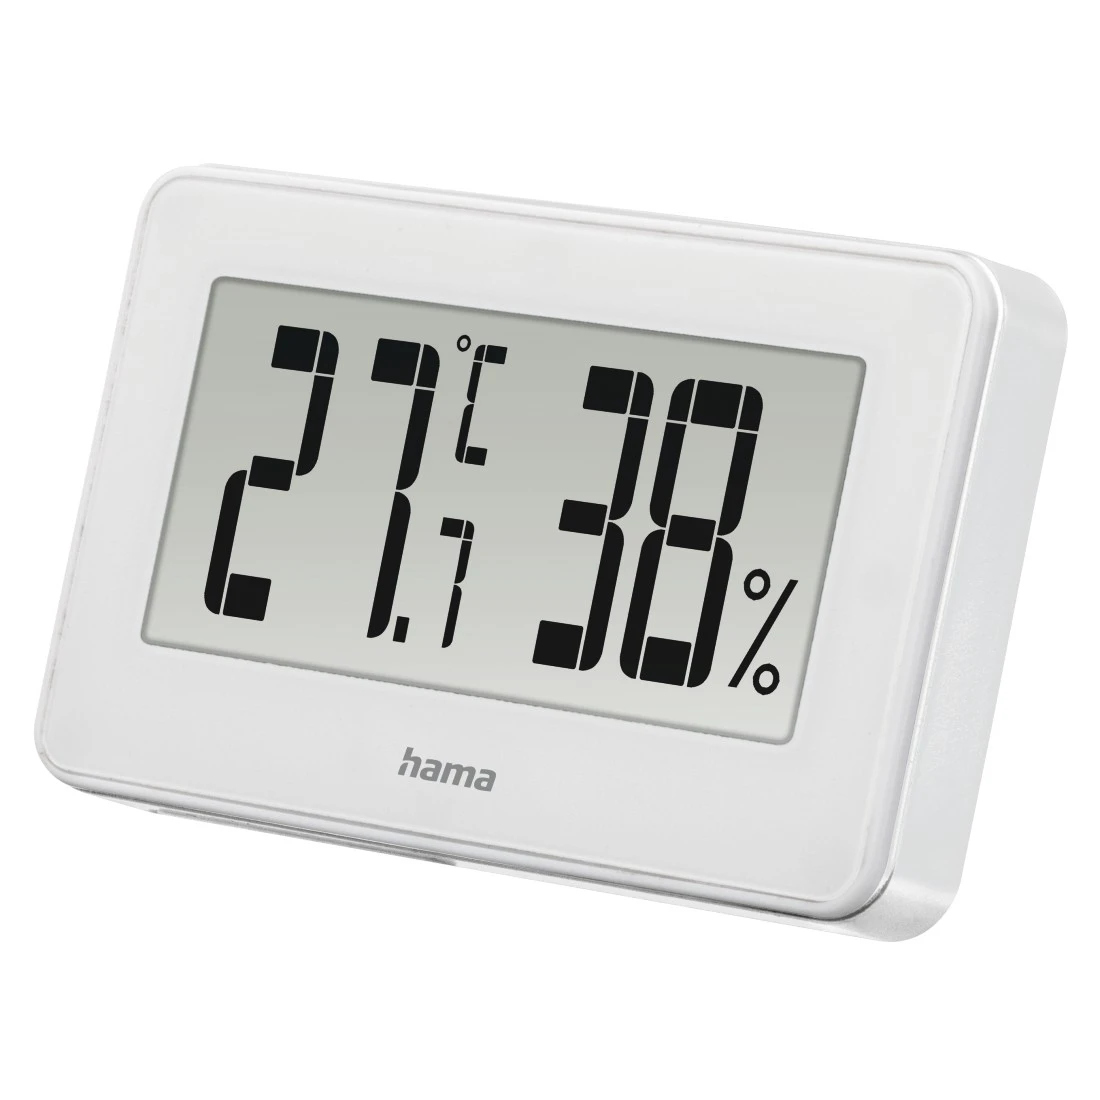 2 Pièces Mini Thermometre Interieur Numérique, Hygrometre Portable  Professionnel Grand Écran Avec Horloge, Thermomètre Blanc [H663]